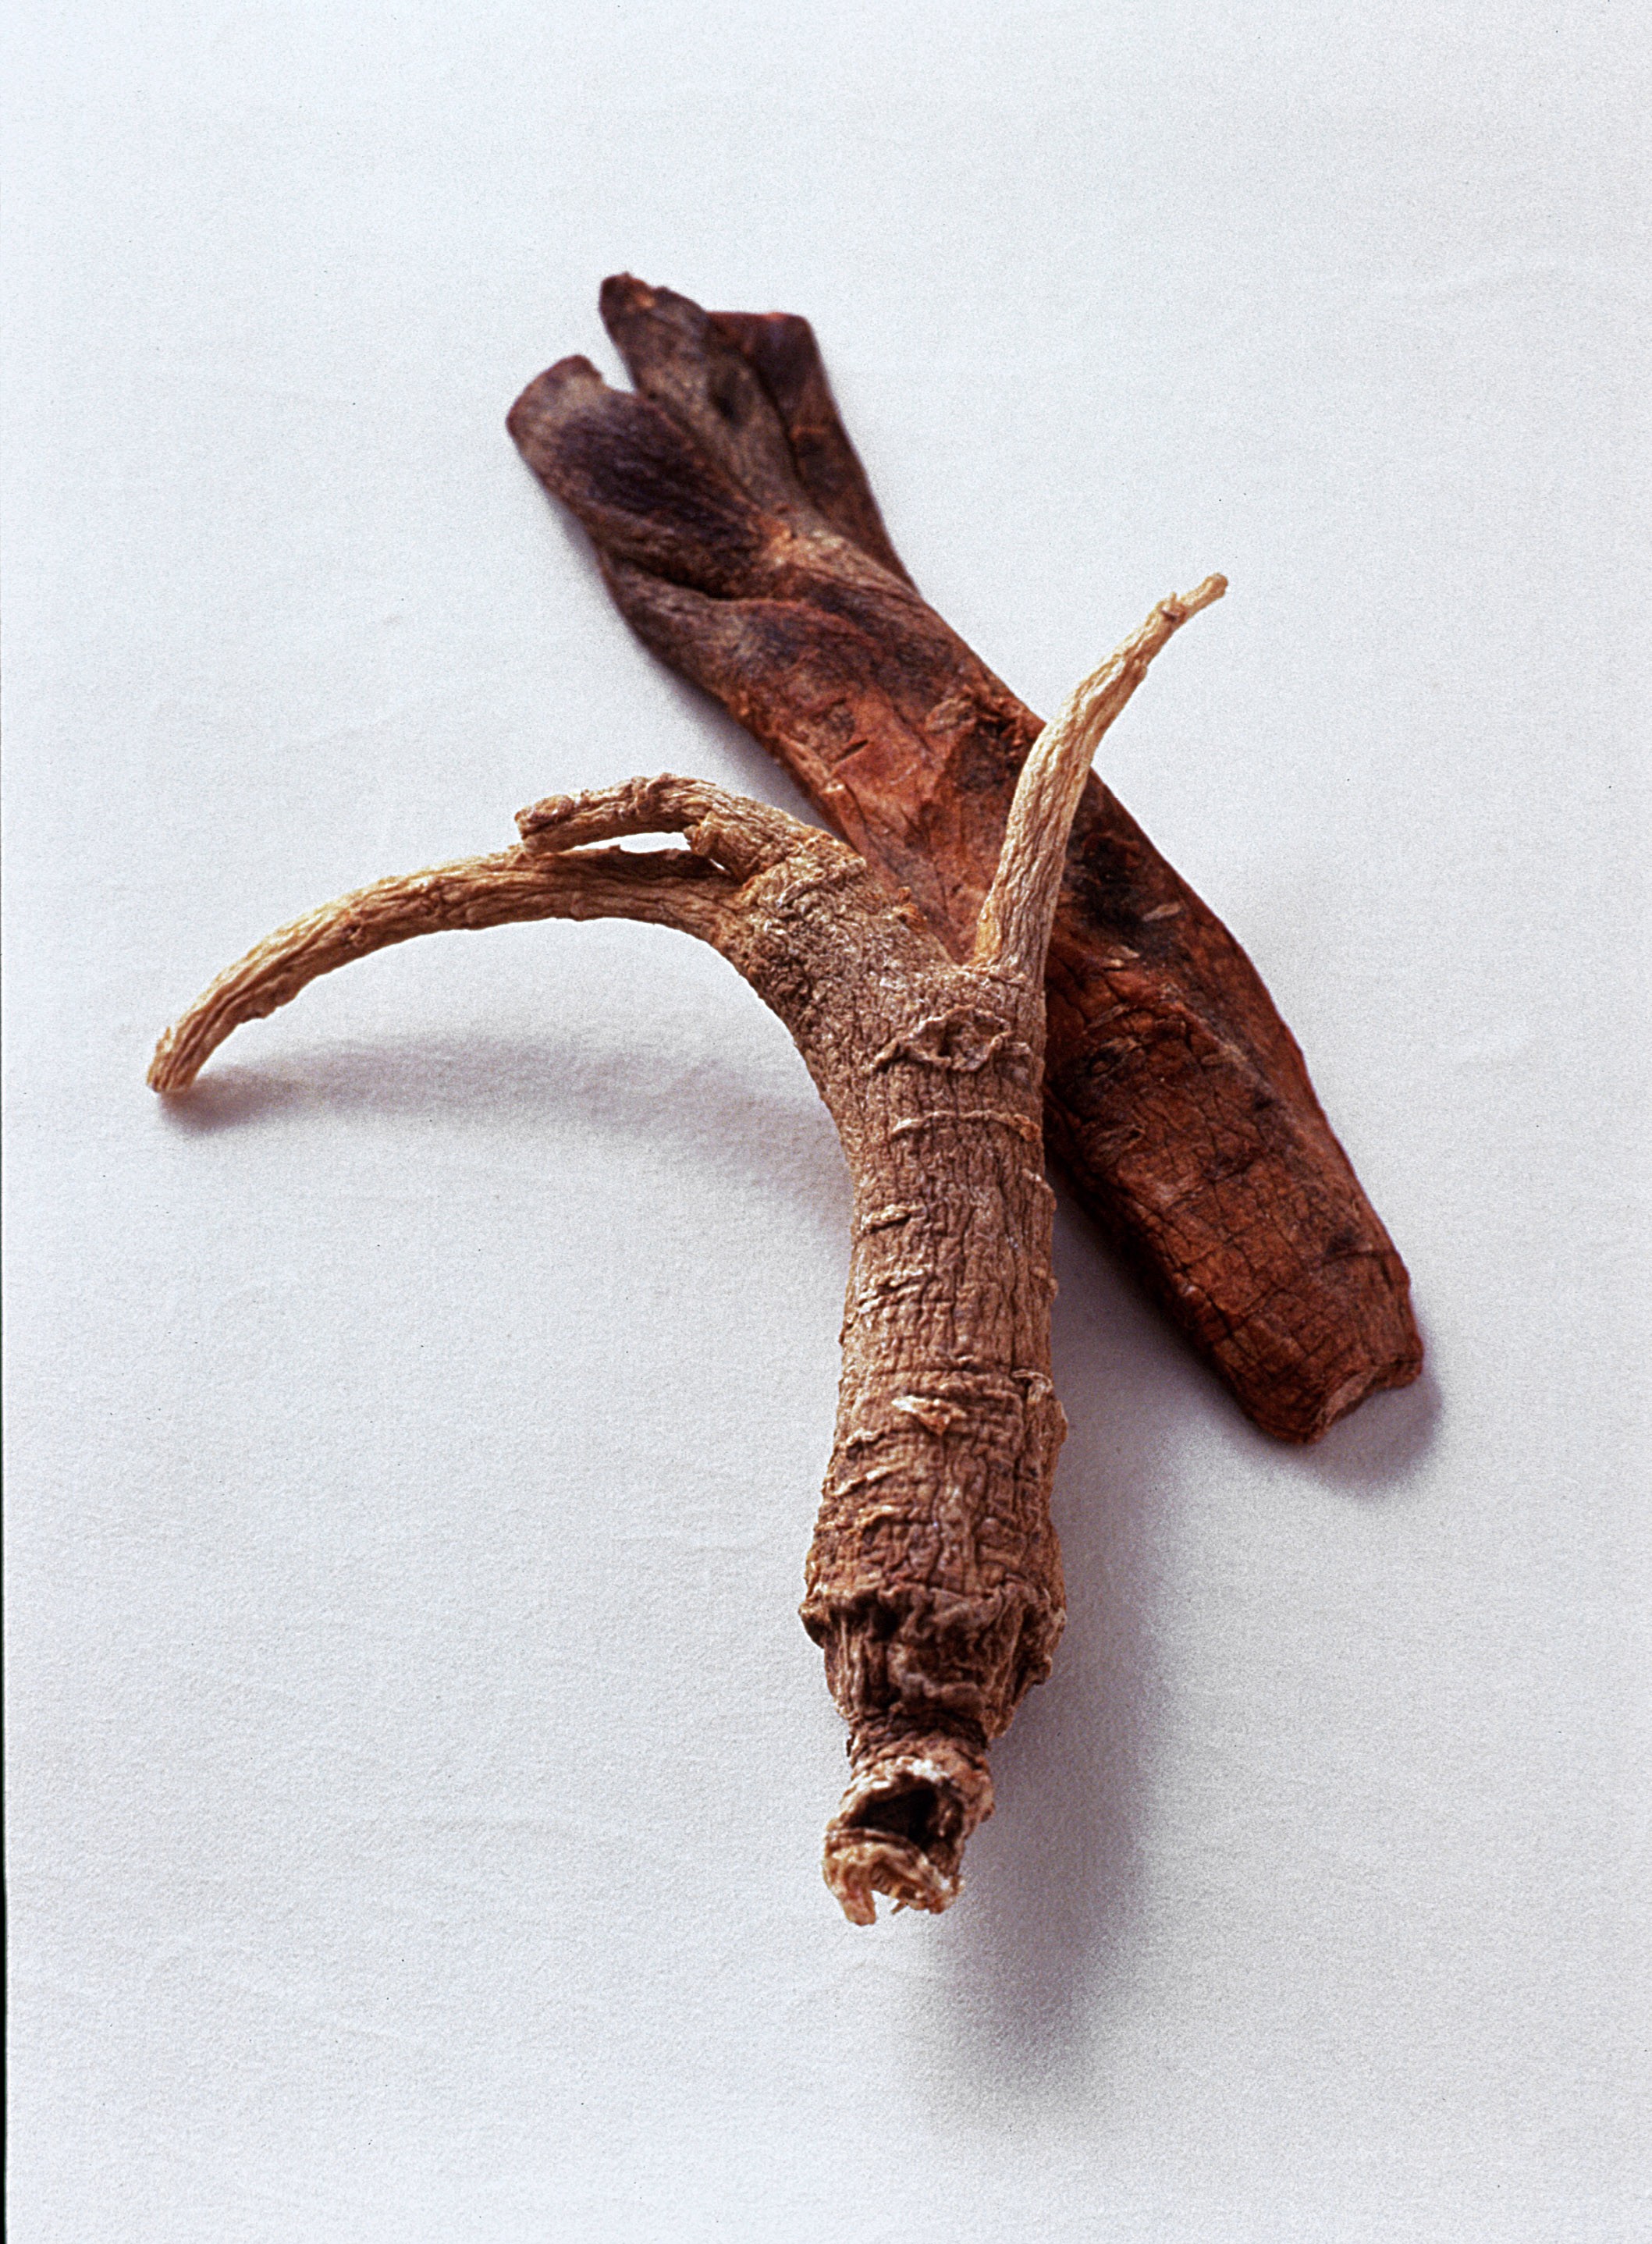 Raiz de ginseng, um dos afrodisíacos conhecidos por 'substituir' o Viagra (Foto: Getty Images / James Worrell )